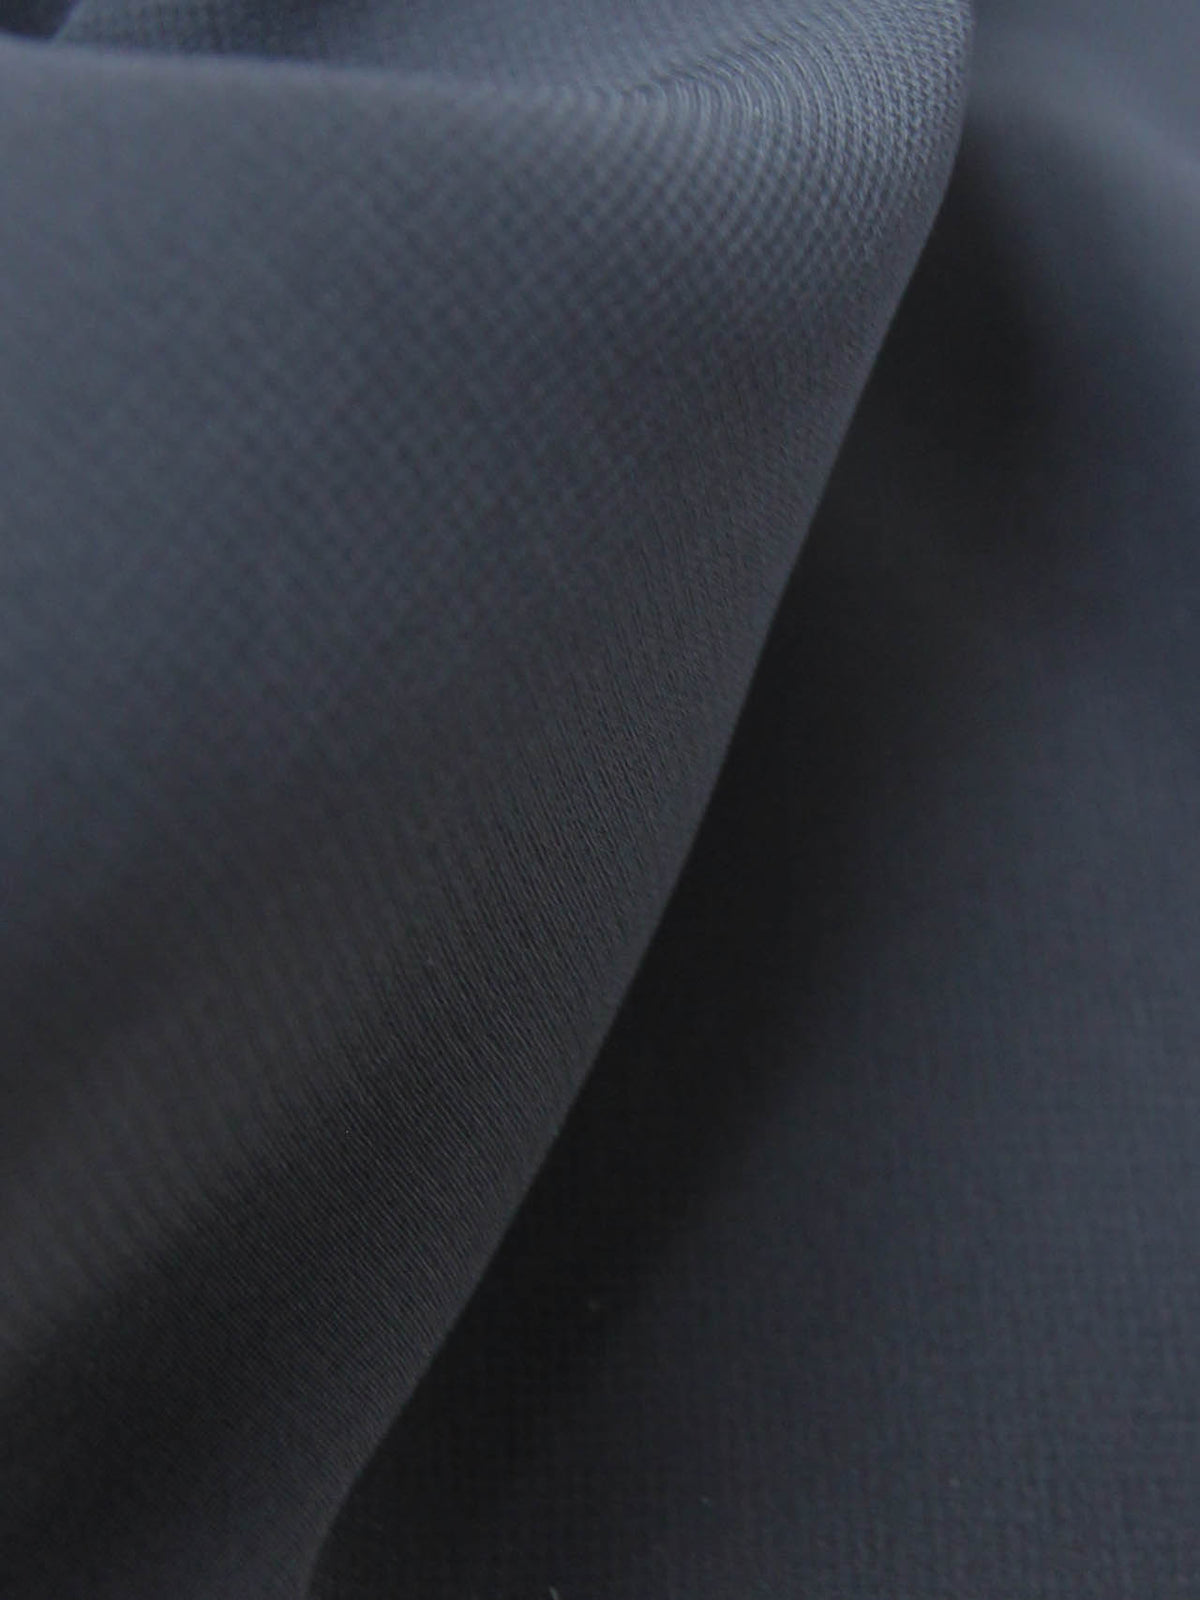 Black Polyester Chiffon Fabric - Serendipity